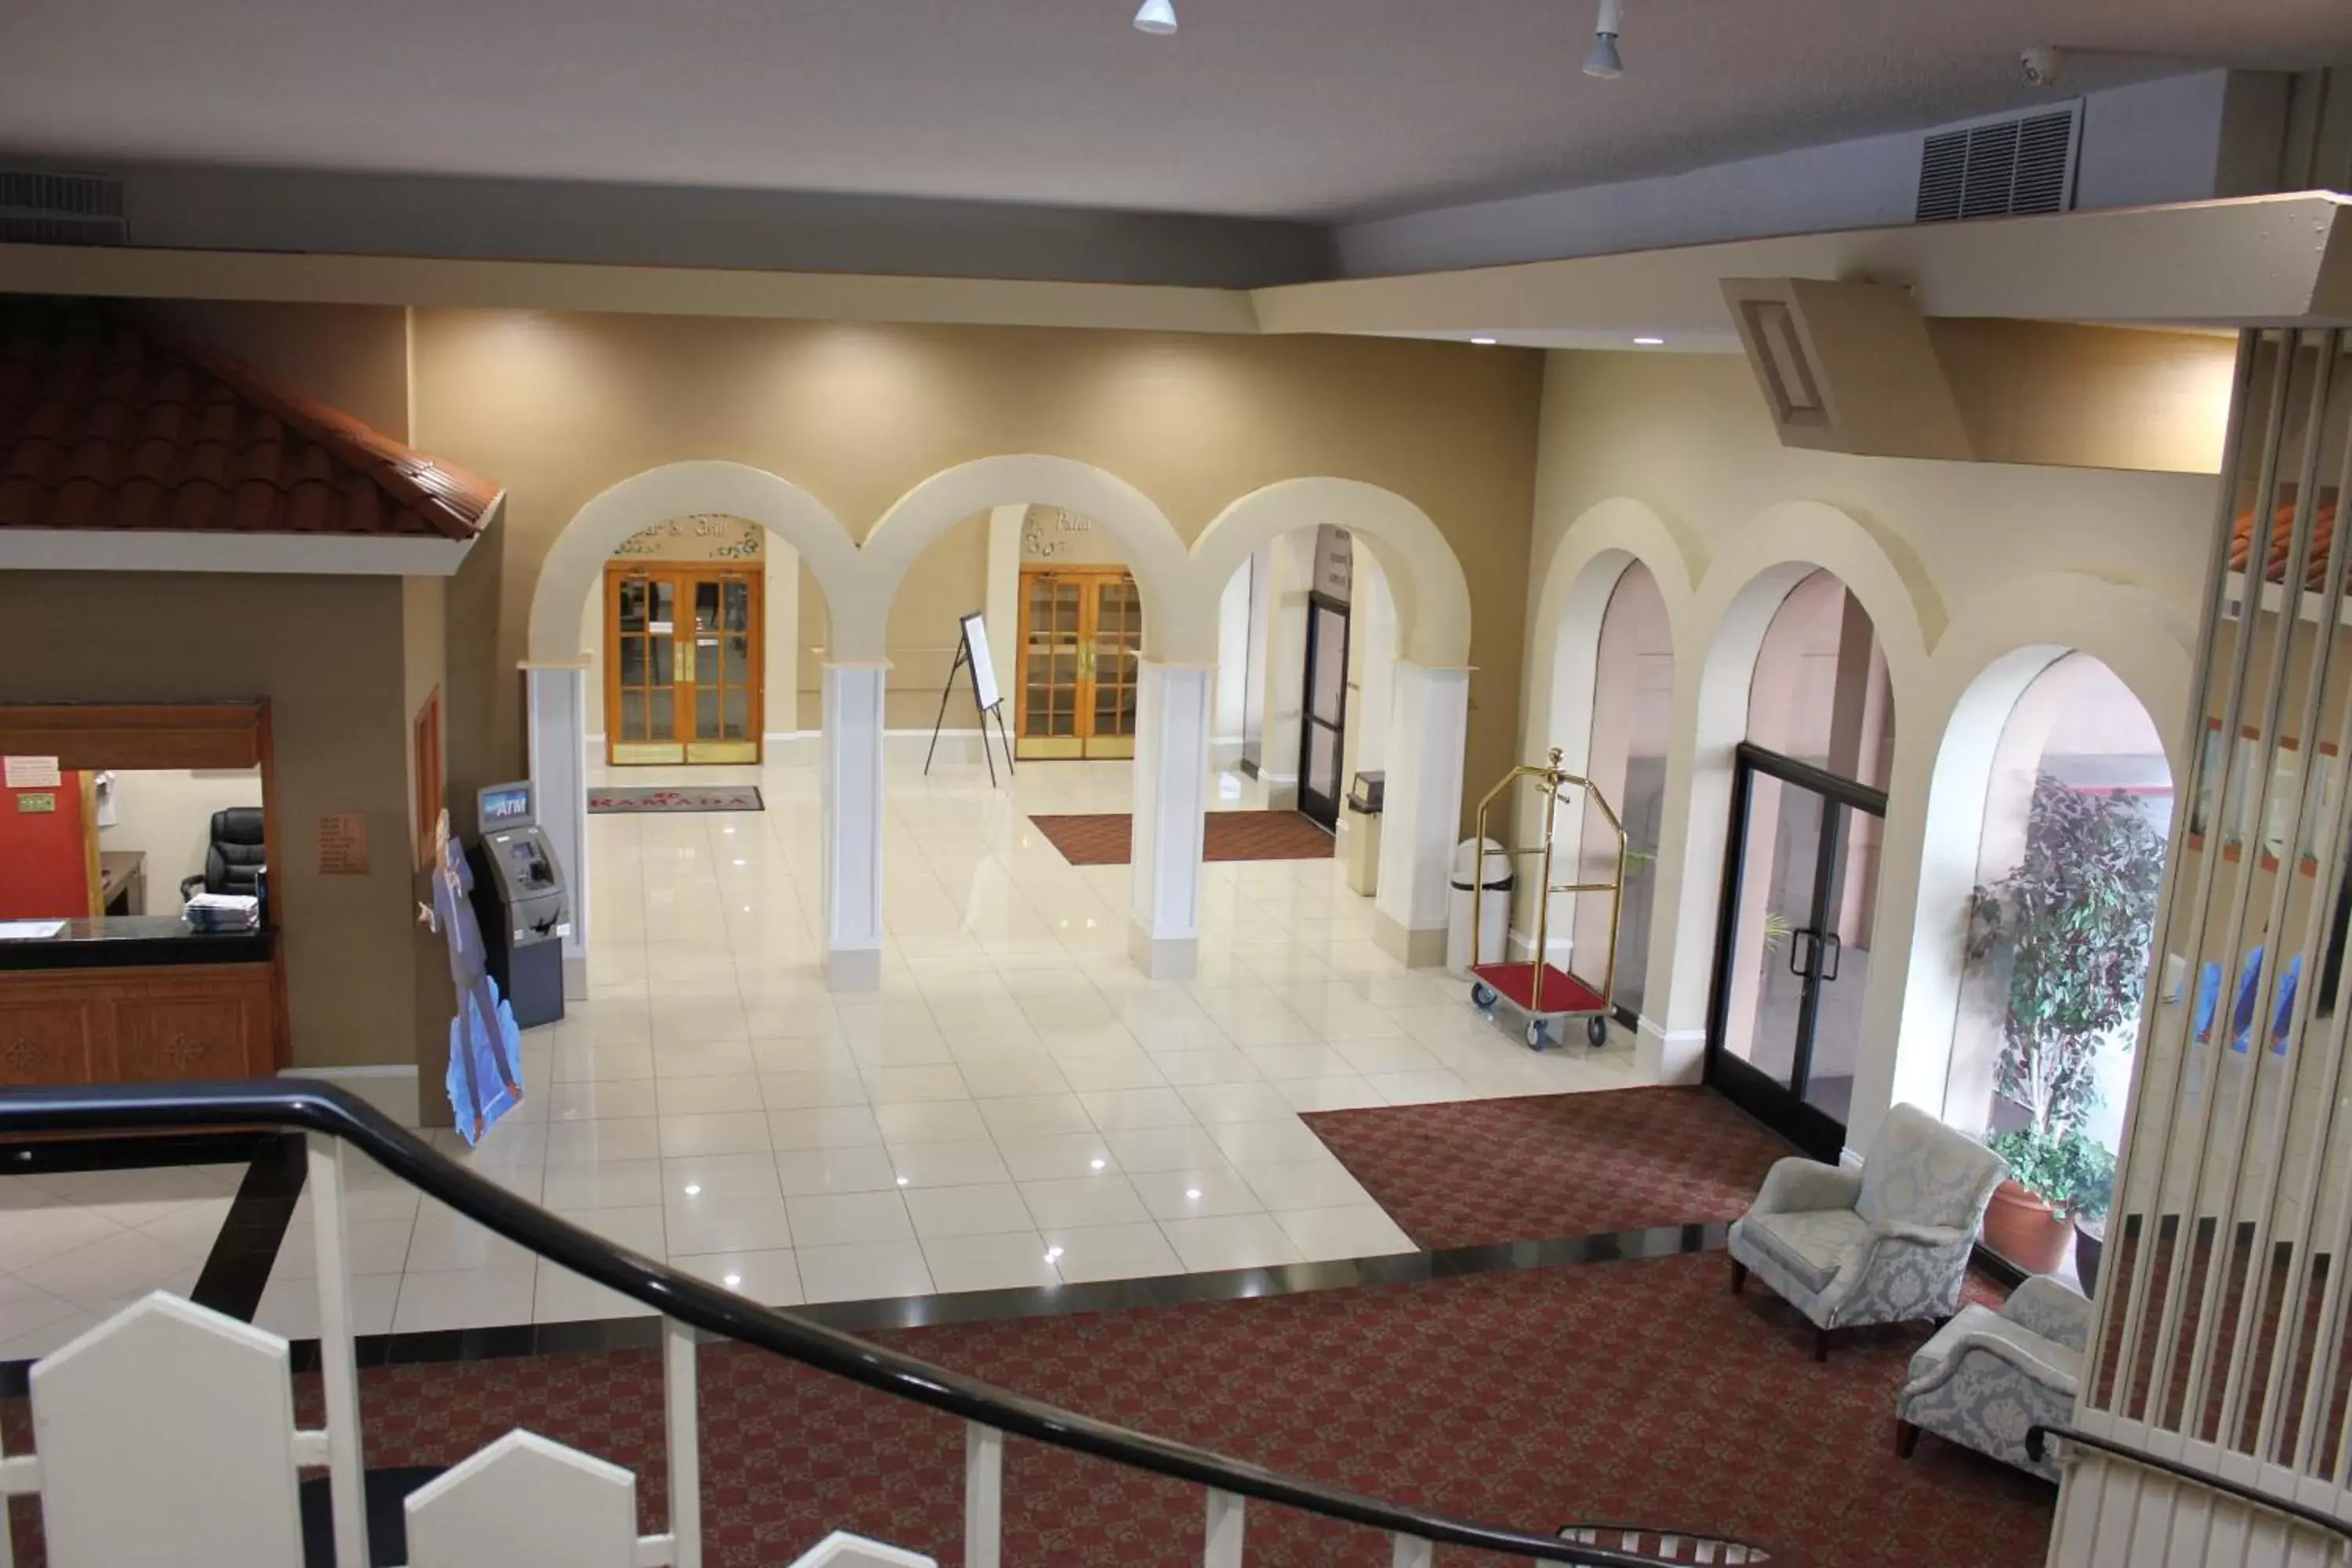 Lobby or reception in Ramada by Wyndham Fresno North